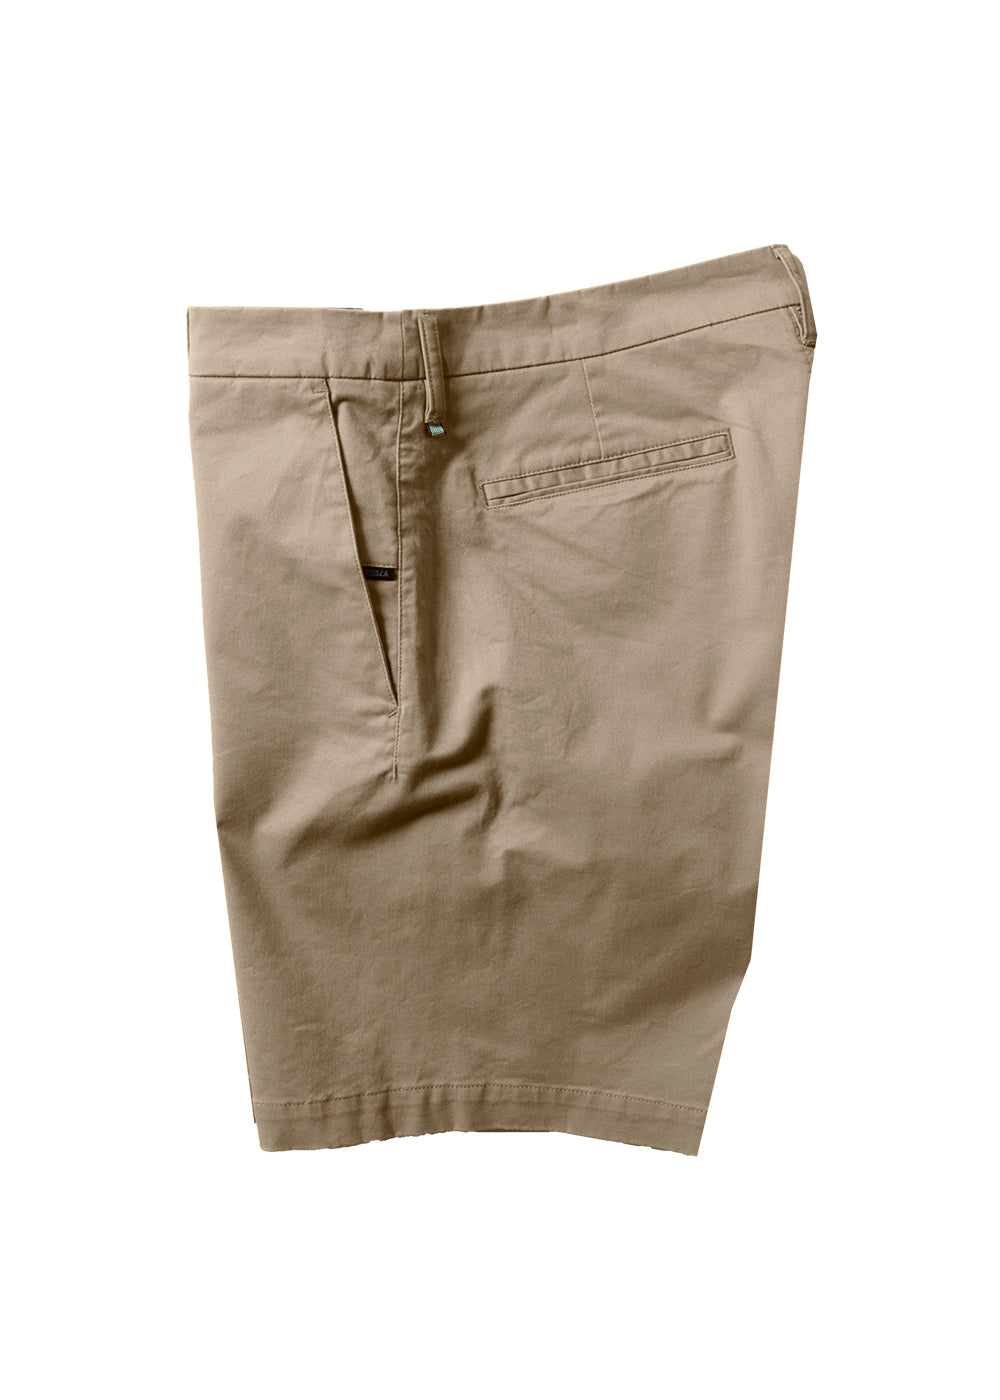 Vissla Mens Shorts | No See Ums Cord Eco 18